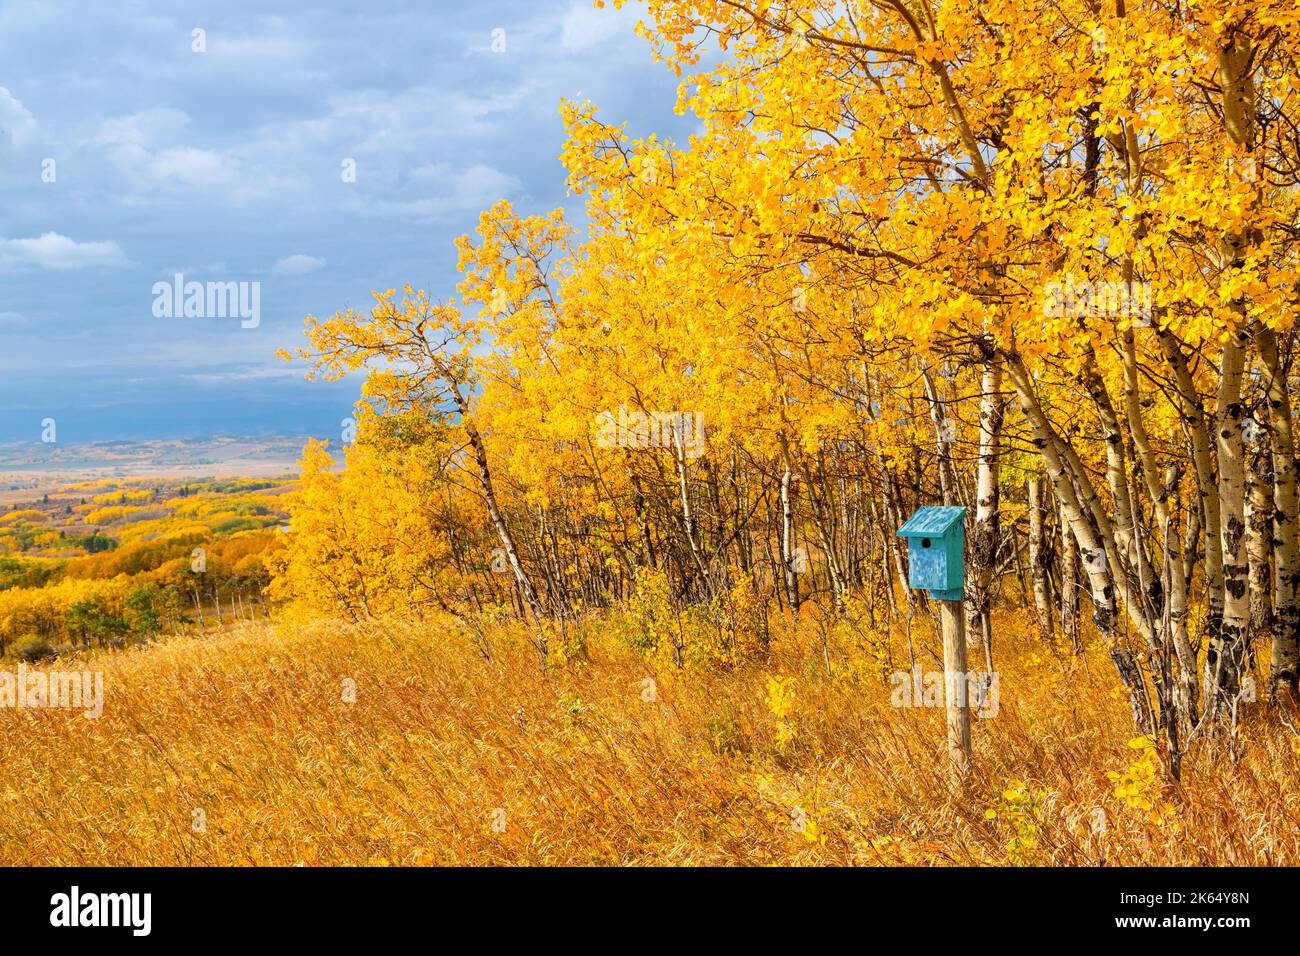 Boîte à oiseaux bleue entourée de bouleaux d'automne contre le paysage du ciel bleu dans les Prairies du sud de l'Alberta, près de Calgary, Canada. Saison nature de retour Banque D'Images